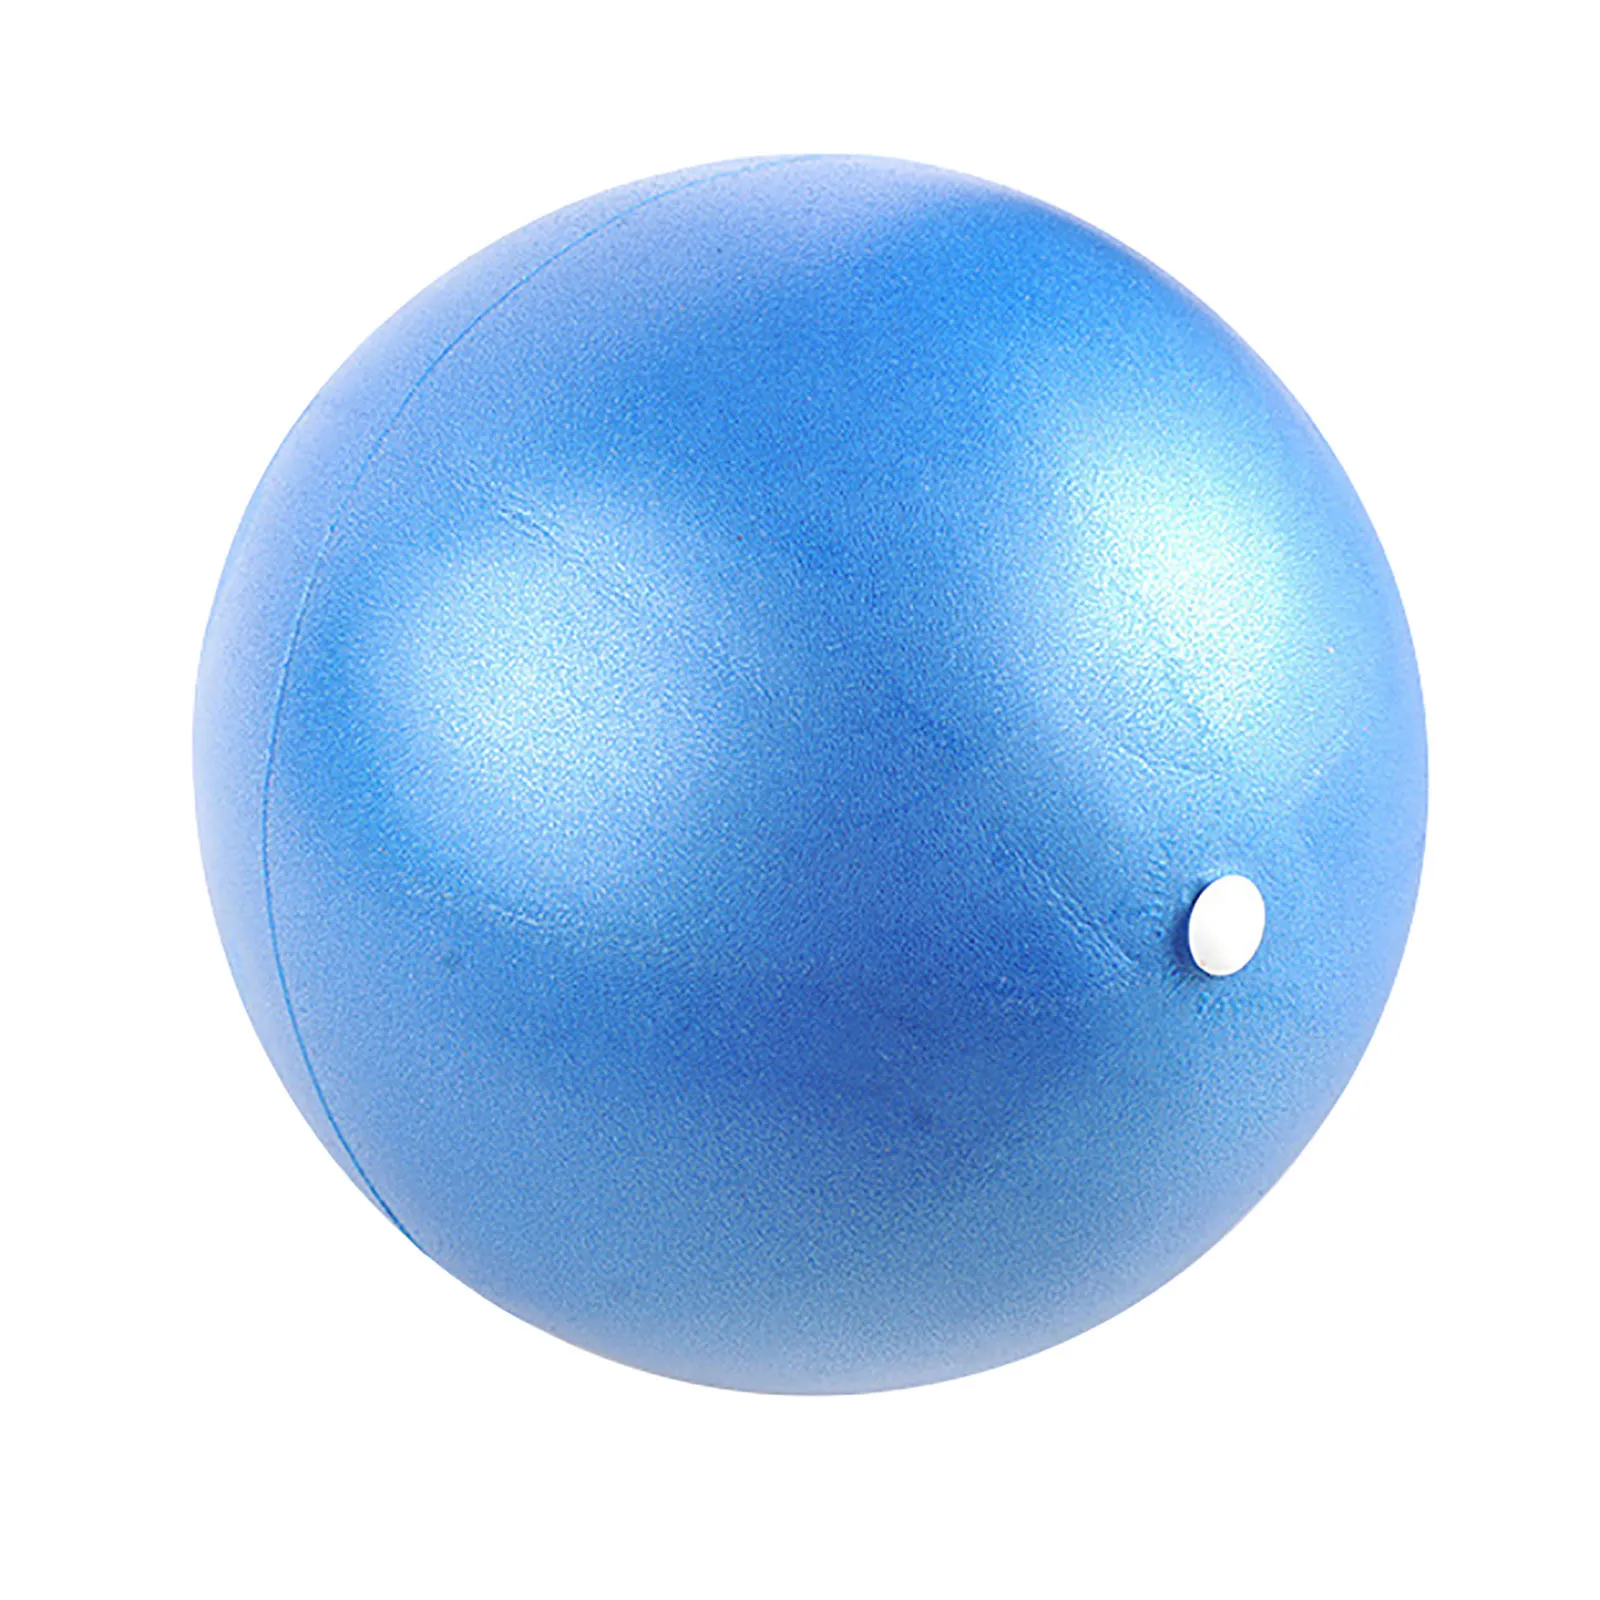 Bola de la Yoga de la aptitud de Pilates equilibrio estable de la pelota engrosamiento a prueba de explosión ustung bola de la yoga yoga explosión de la bola de gimnasio aus ü Bang 1